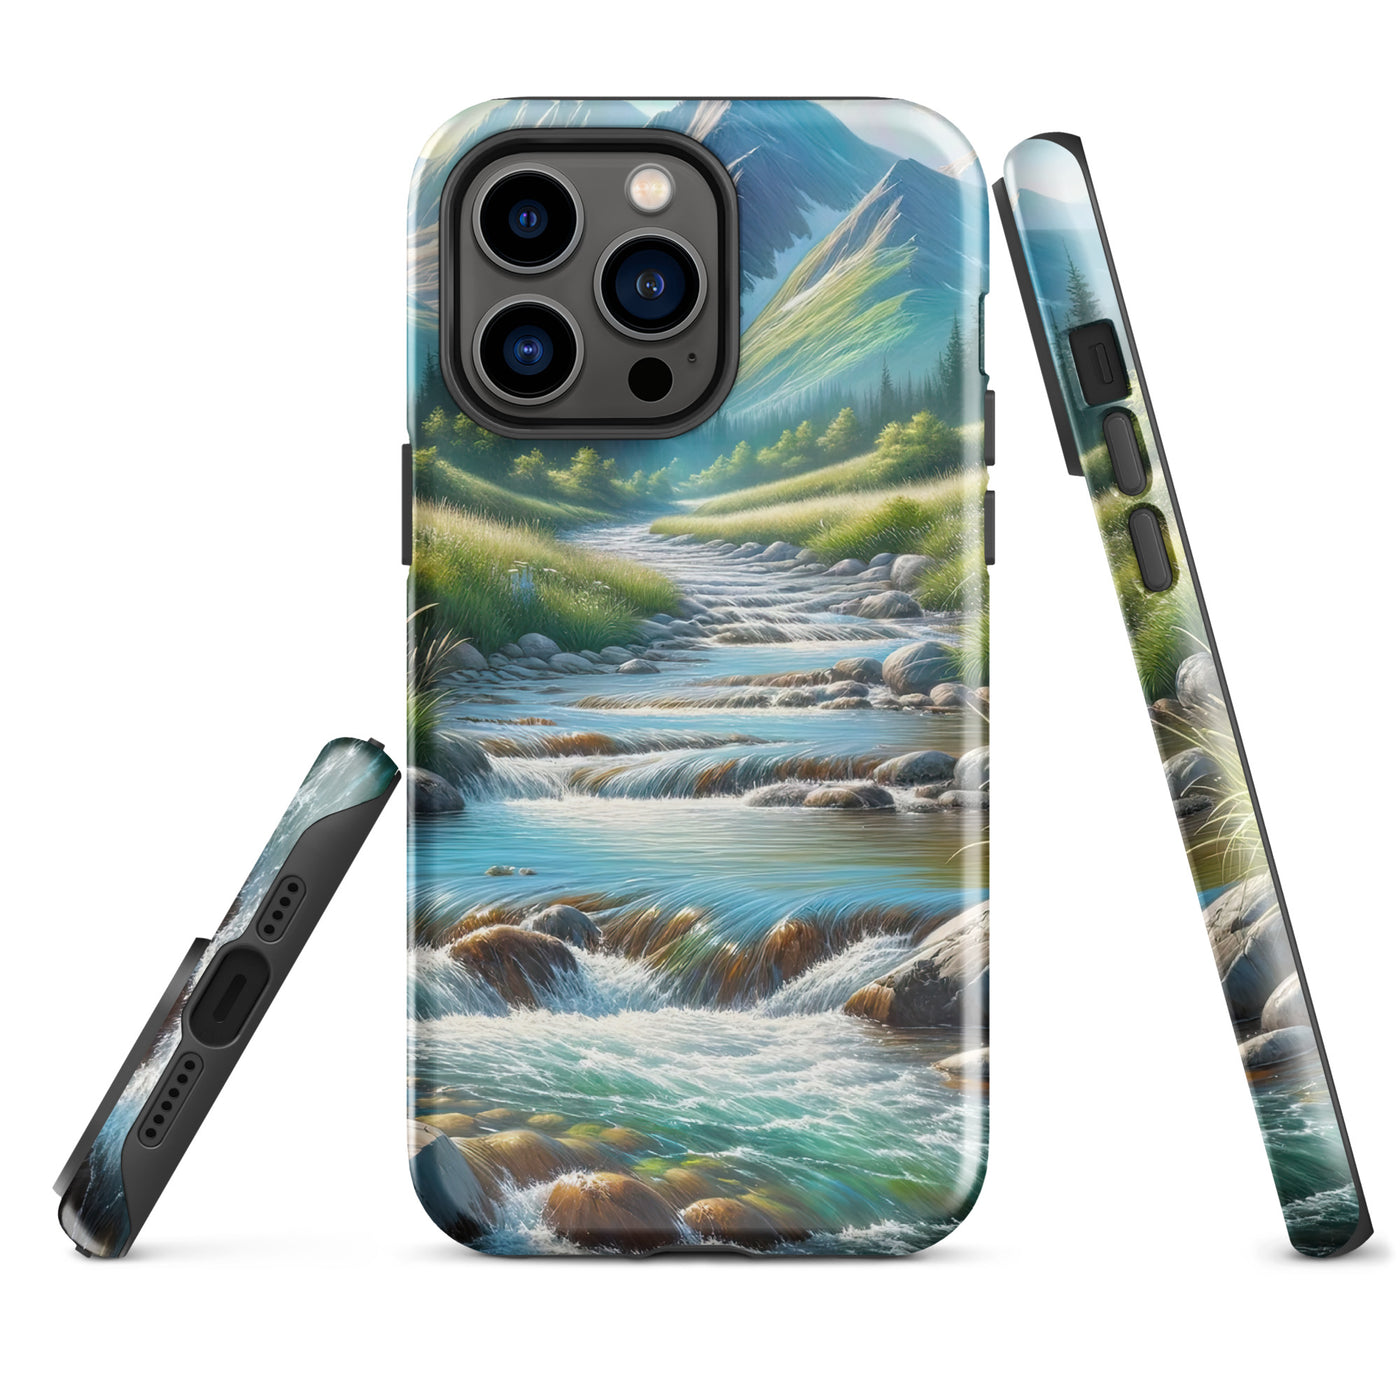 Sanfter Gebirgsbach in Ölgemälde, klares Wasser über glatten Felsen - iPhone Schutzhülle (robust) berge xxx yyy zzz iPhone 14 Pro Max